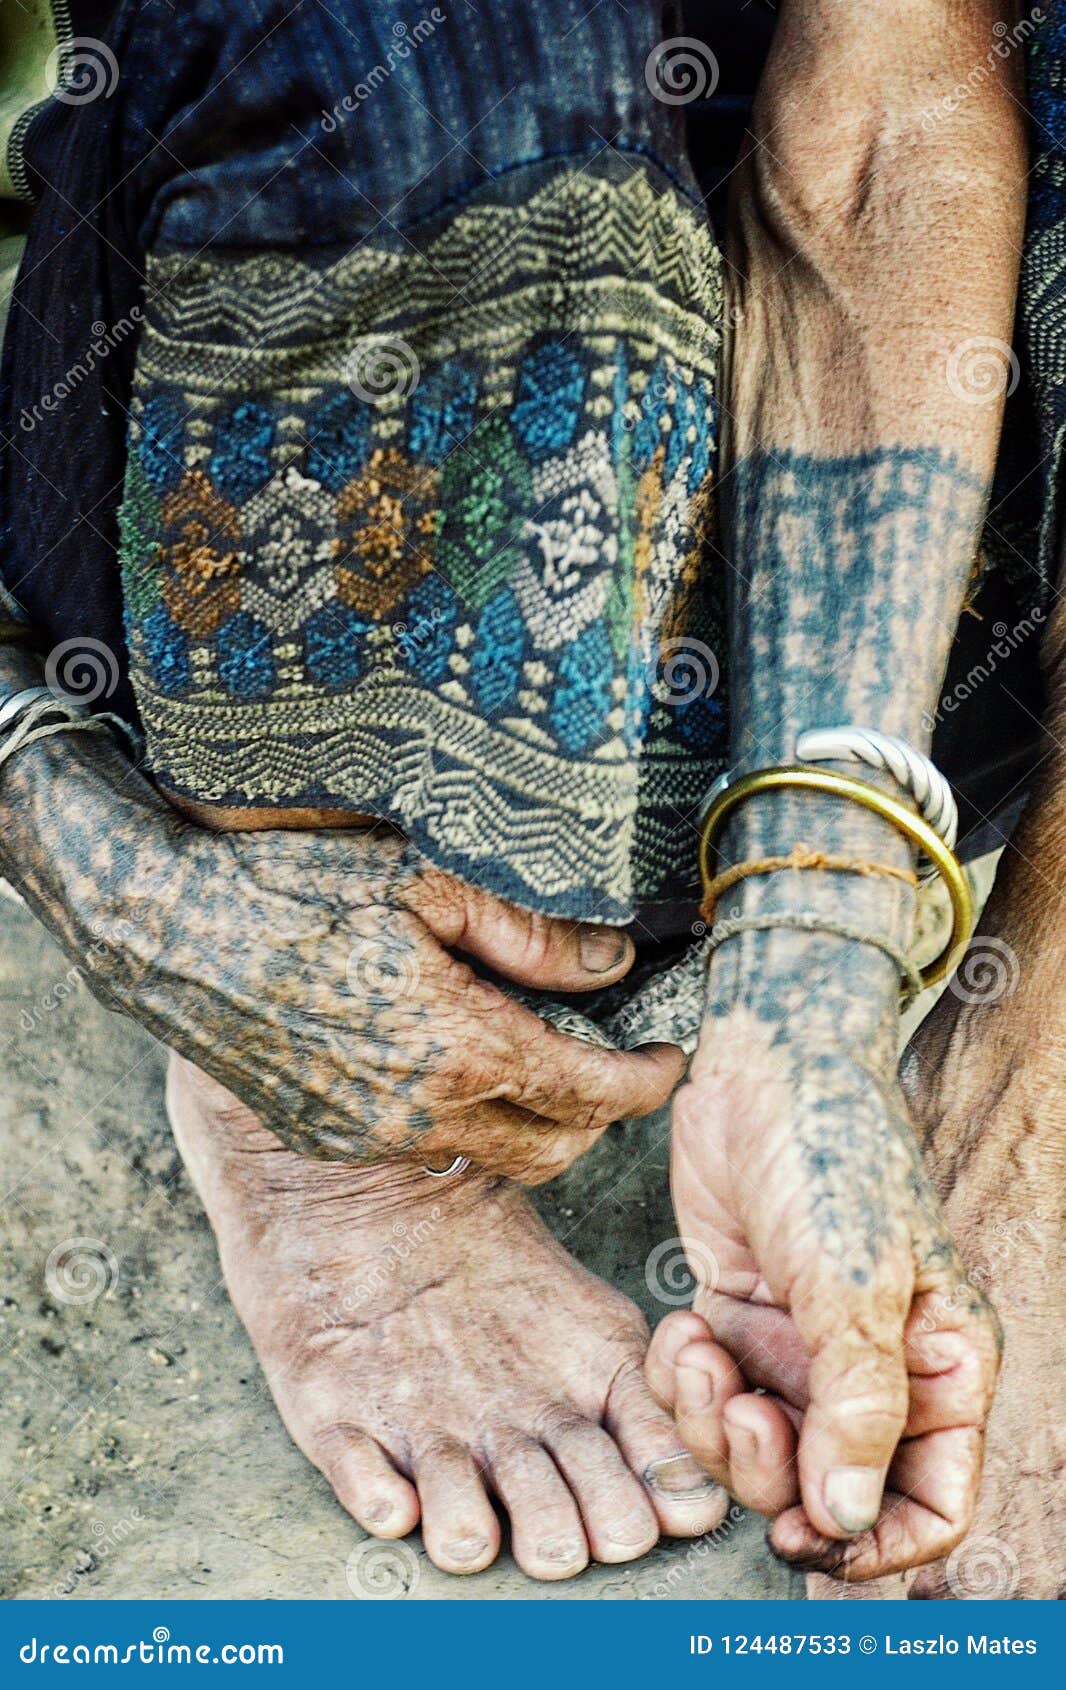 Luang Namta/Laos - 06 juli 2011: bejaarde stammenvrouw met traditionele tatoegeringen voor haar huis